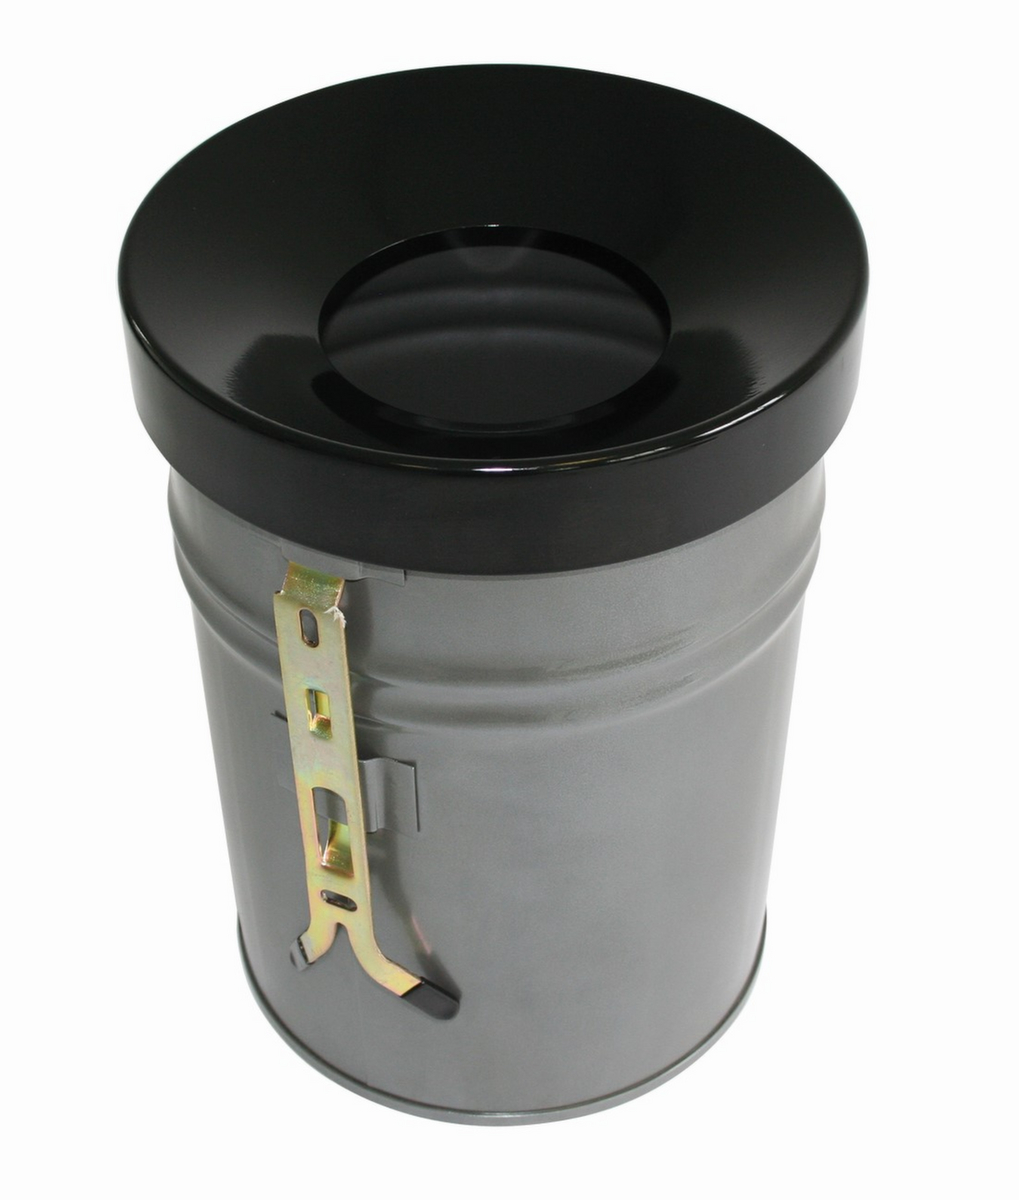 Zelfblussende afvalbak FIRE EX voor wandbevestiging, 30 l, lichtgrijs, bovendeel zwart  ZOOM